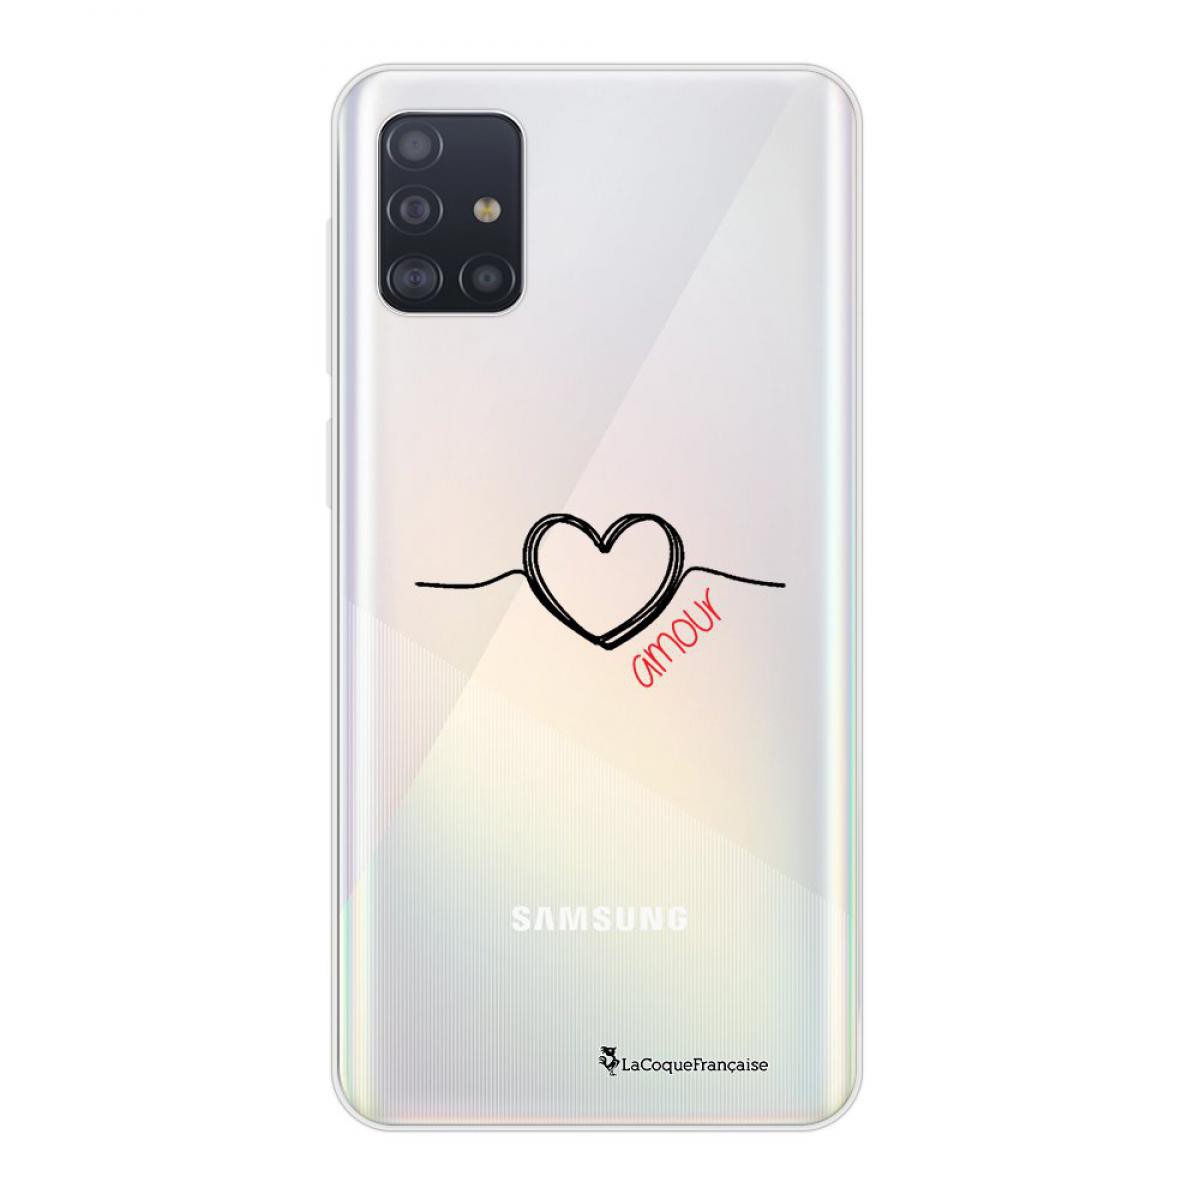 La Coque Francaise - Coque Samsung Galaxy A51 souple transparente Coeur Noir Amour Motif Ecriture Tendance La Coque Francaise - Coque, étui smartphone